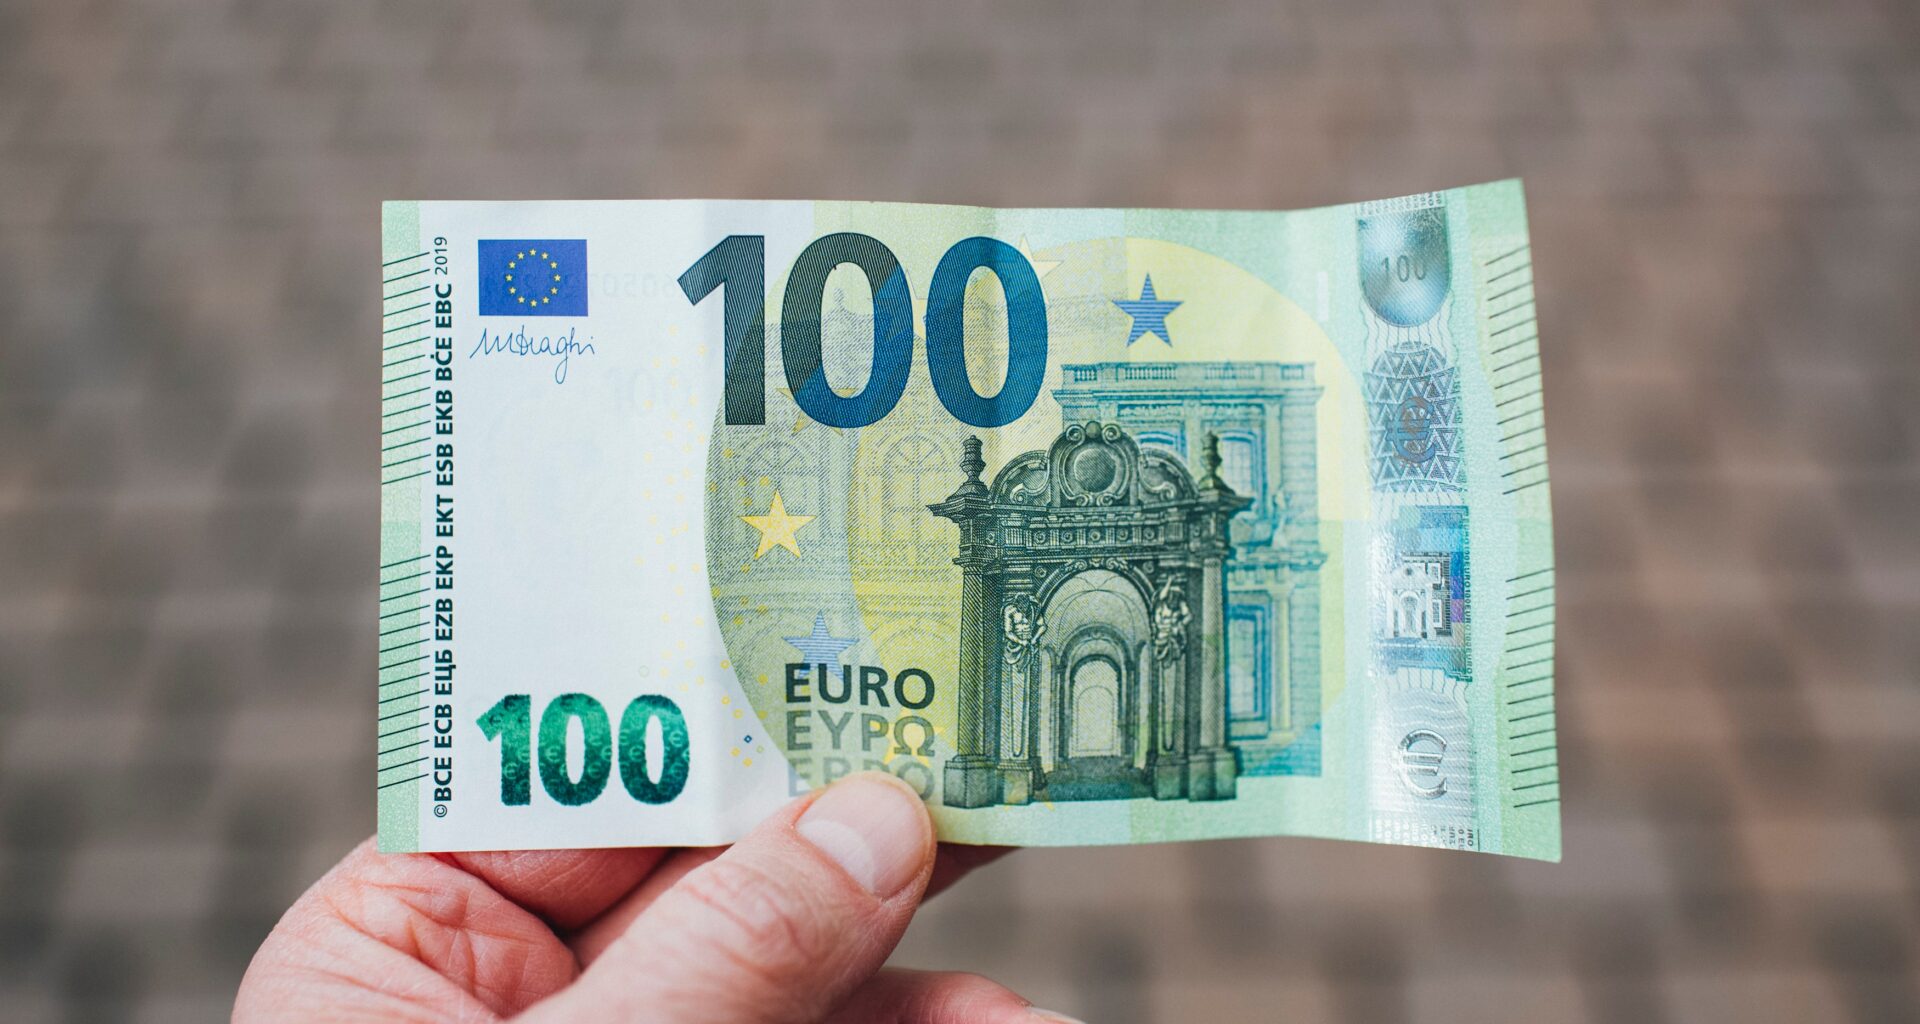 Dollar and Euro at parity